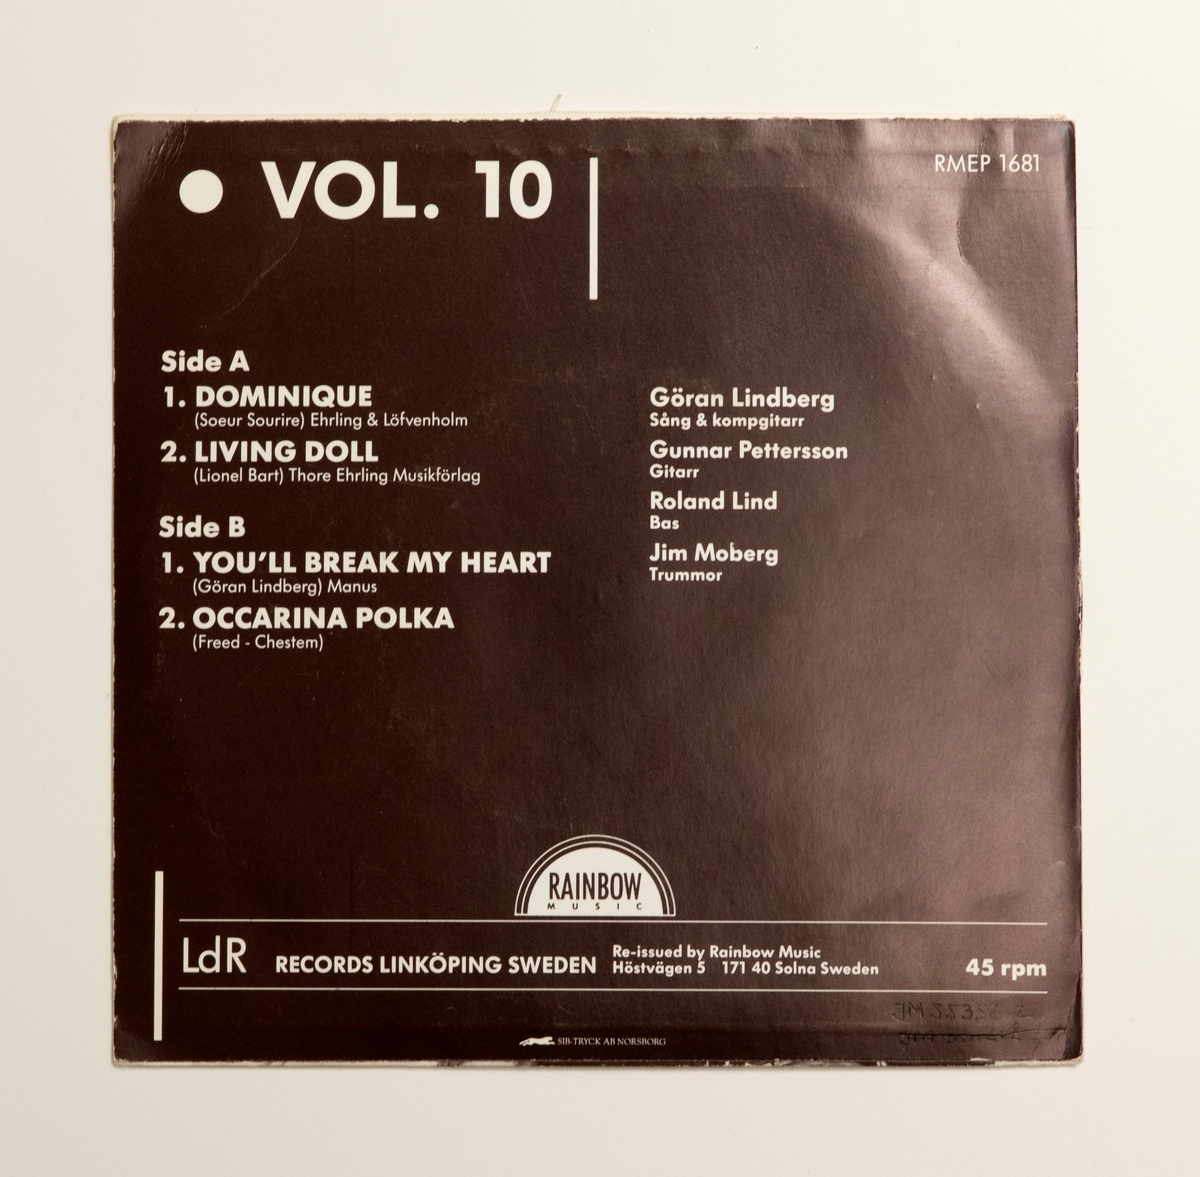 EP-skiva av svart vinyl med röd pappersetikett, i omslag av papper. Omslagets framsida har ett svart-vitt fotografi av bandet, och märkning "LdR Records". På omslagets baksida finns låttitlarna, och uppgift "VOL. 10".

Innehåll
Sid A:
1. Dominique
2. Living doll
Sida 2:
1. Yoy'll break my heart
2. Occarina polka

JM 55358:1, Skiva
JM 55358:2, Omslag